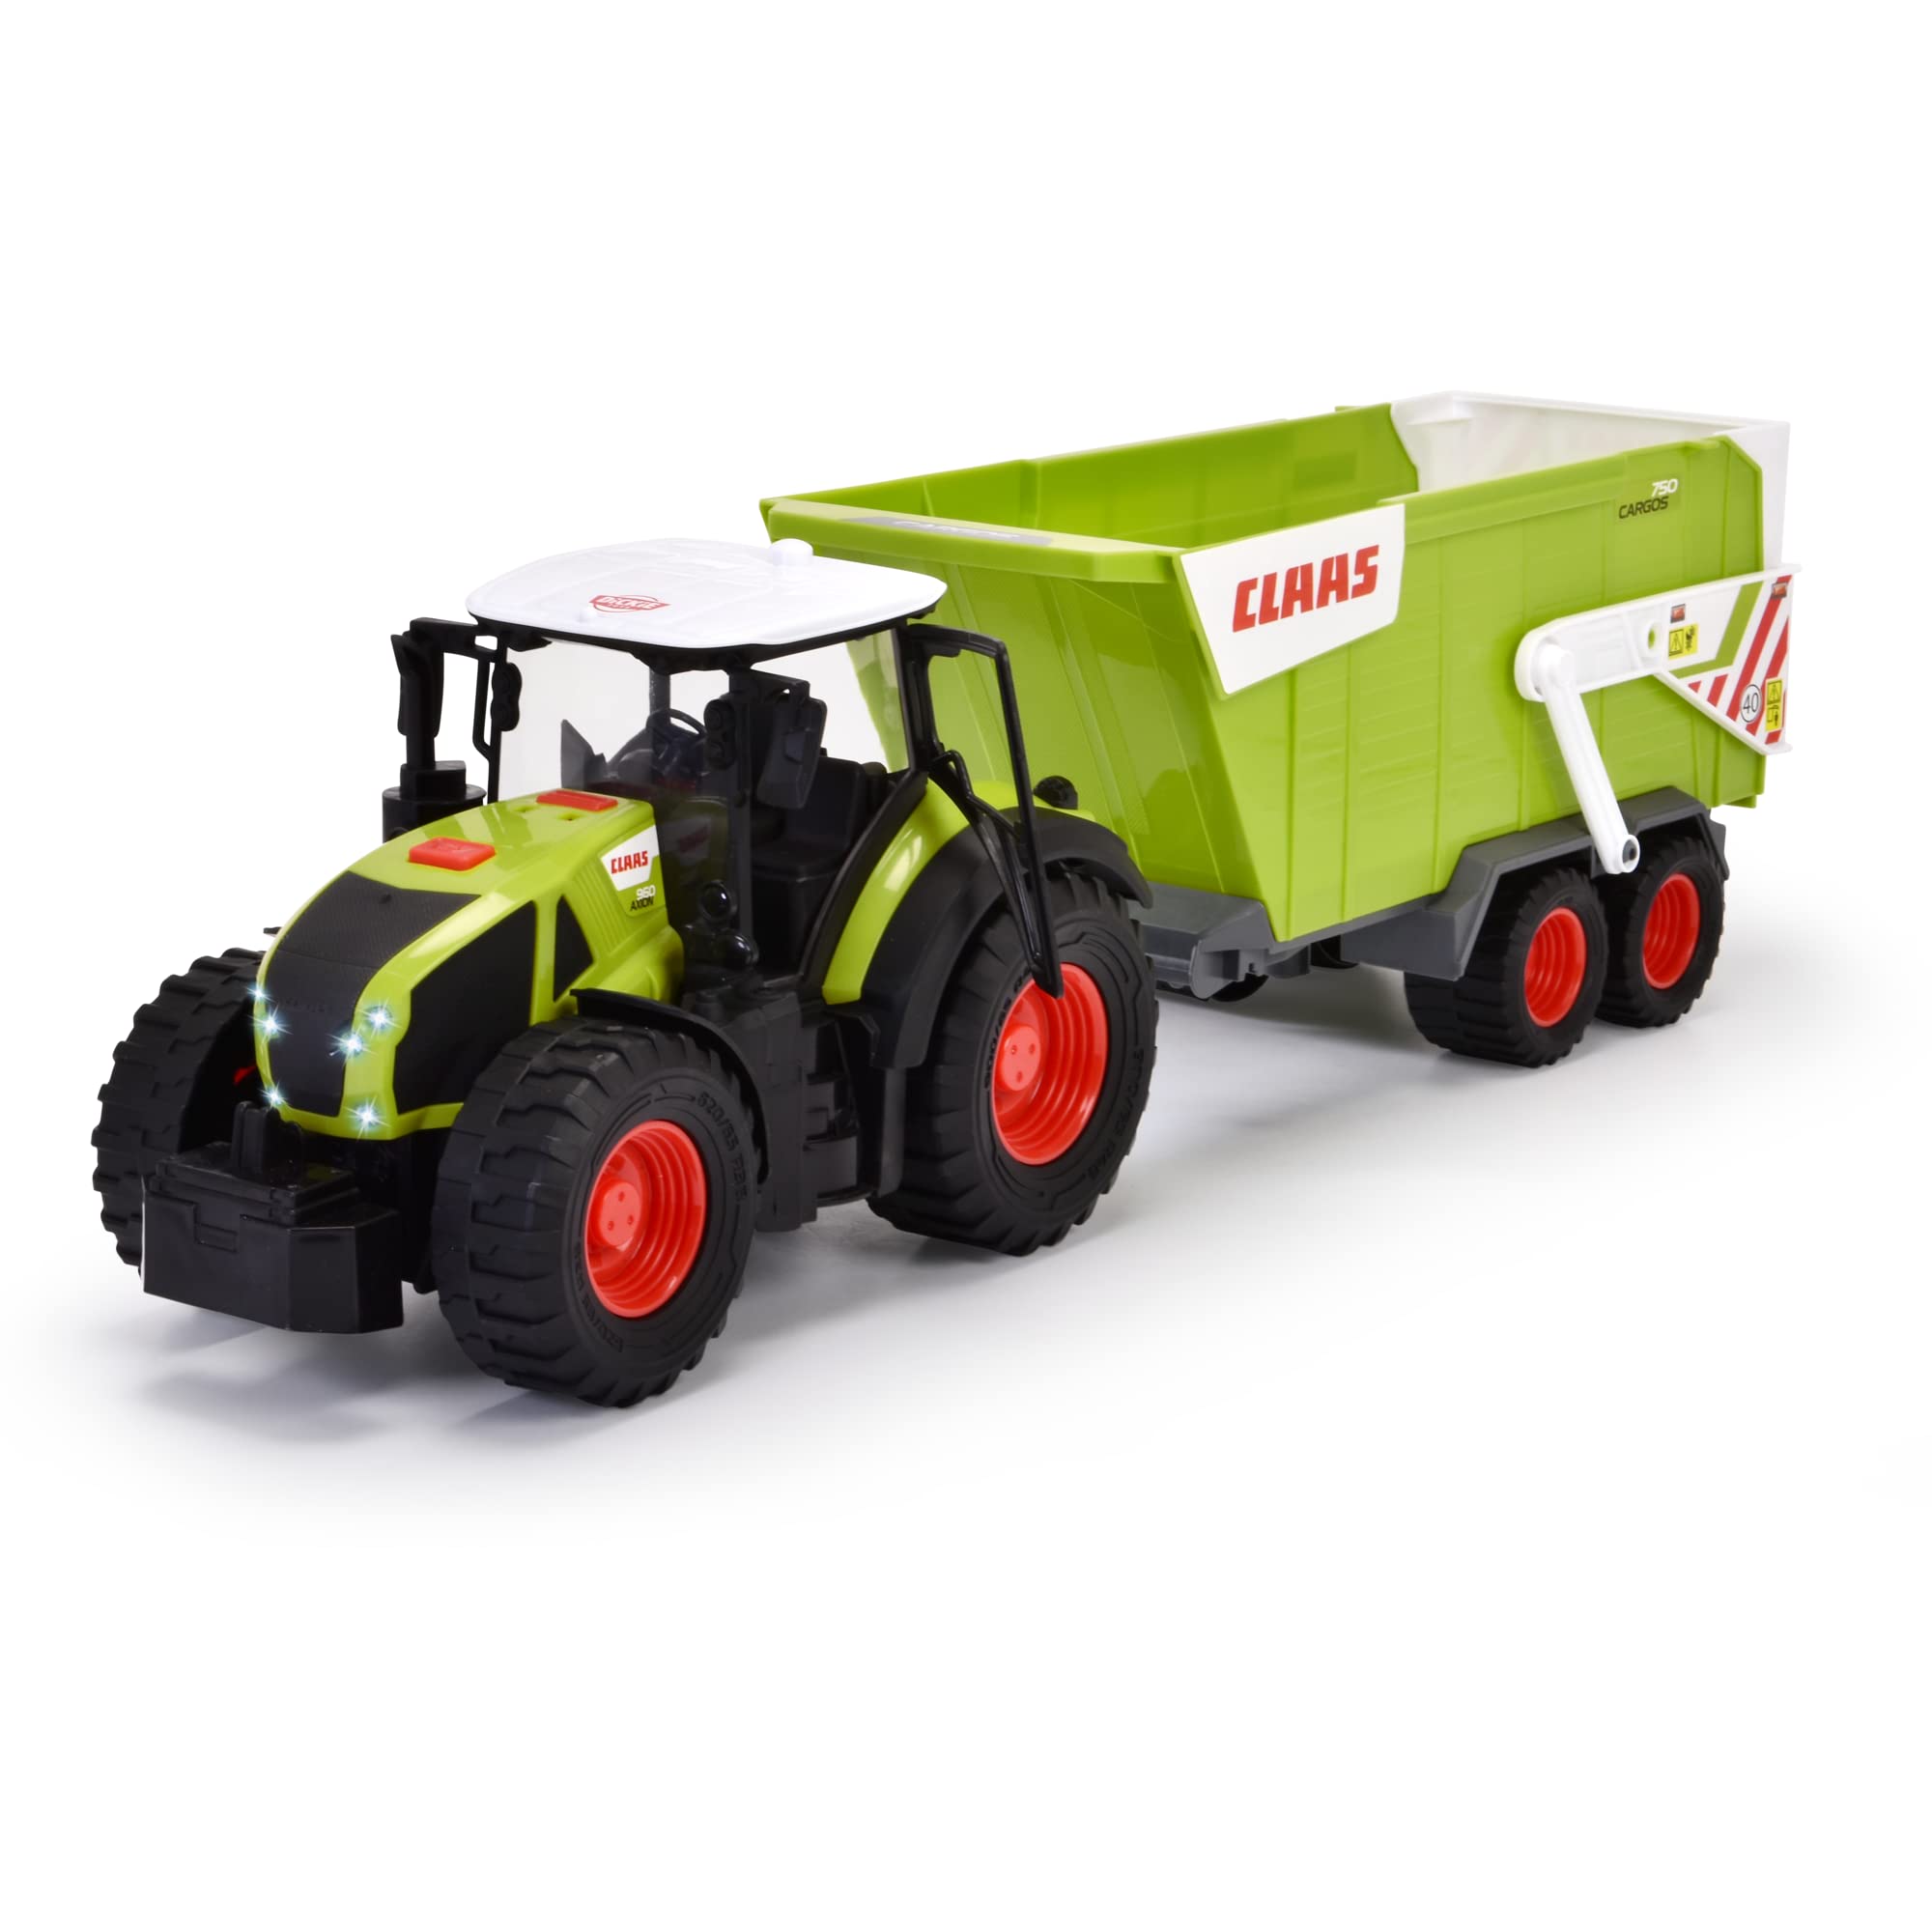 Dickie Toys - CLAAS Traktor mit Anhänger (64 cm) - großer Spielzeug-Trecker mit Freilauf-Mechanik für Kinder ab 3 Jahren, Bauernhof-Fahrzeug mit Licht & Sound und vielen Funktionen, 203739004ONL